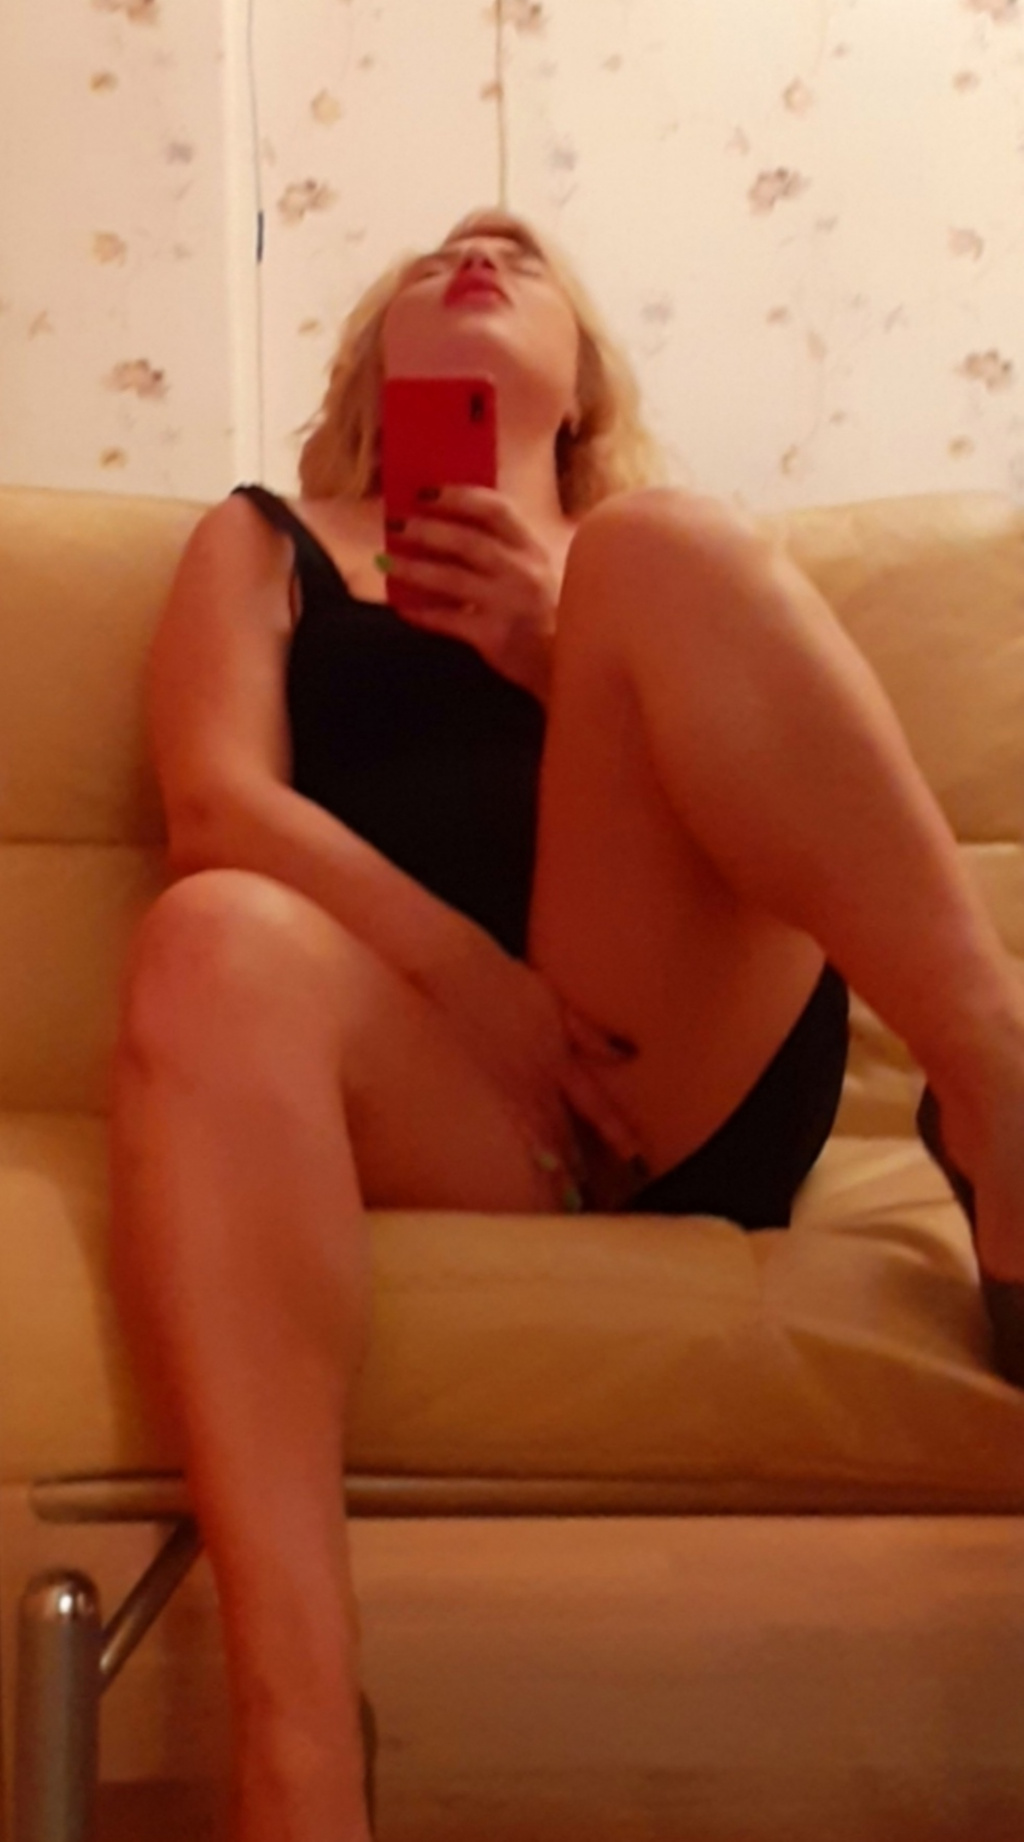 Даша: Проститутка-индивидуалка в Екатеринбурге